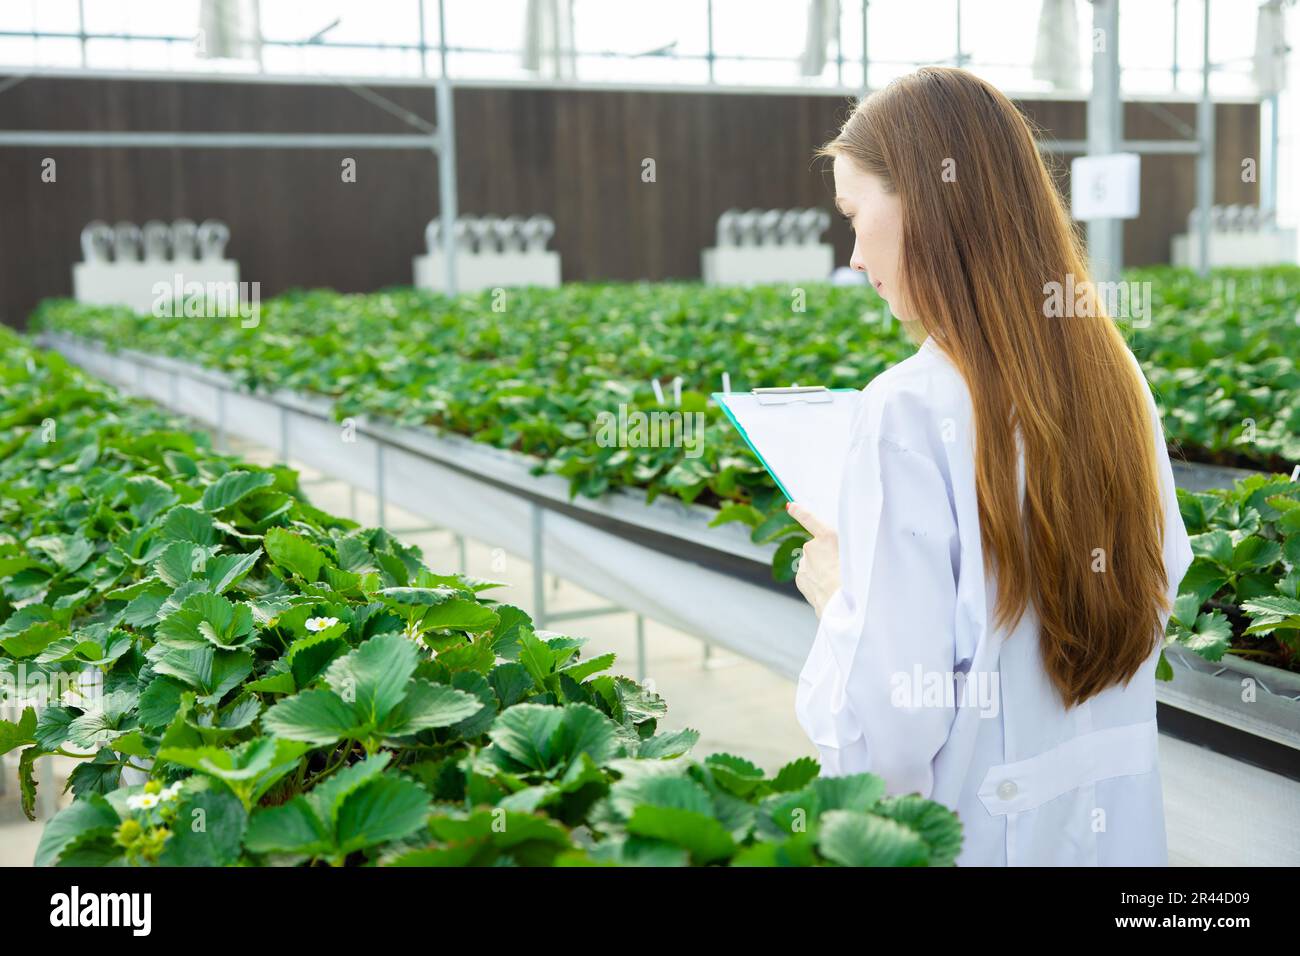 Les scientifiques qui travaillent collectent des données de suivi des plantes cultivent des données pour l'enseignement scientifique de la recherche agricole Banque D'Images